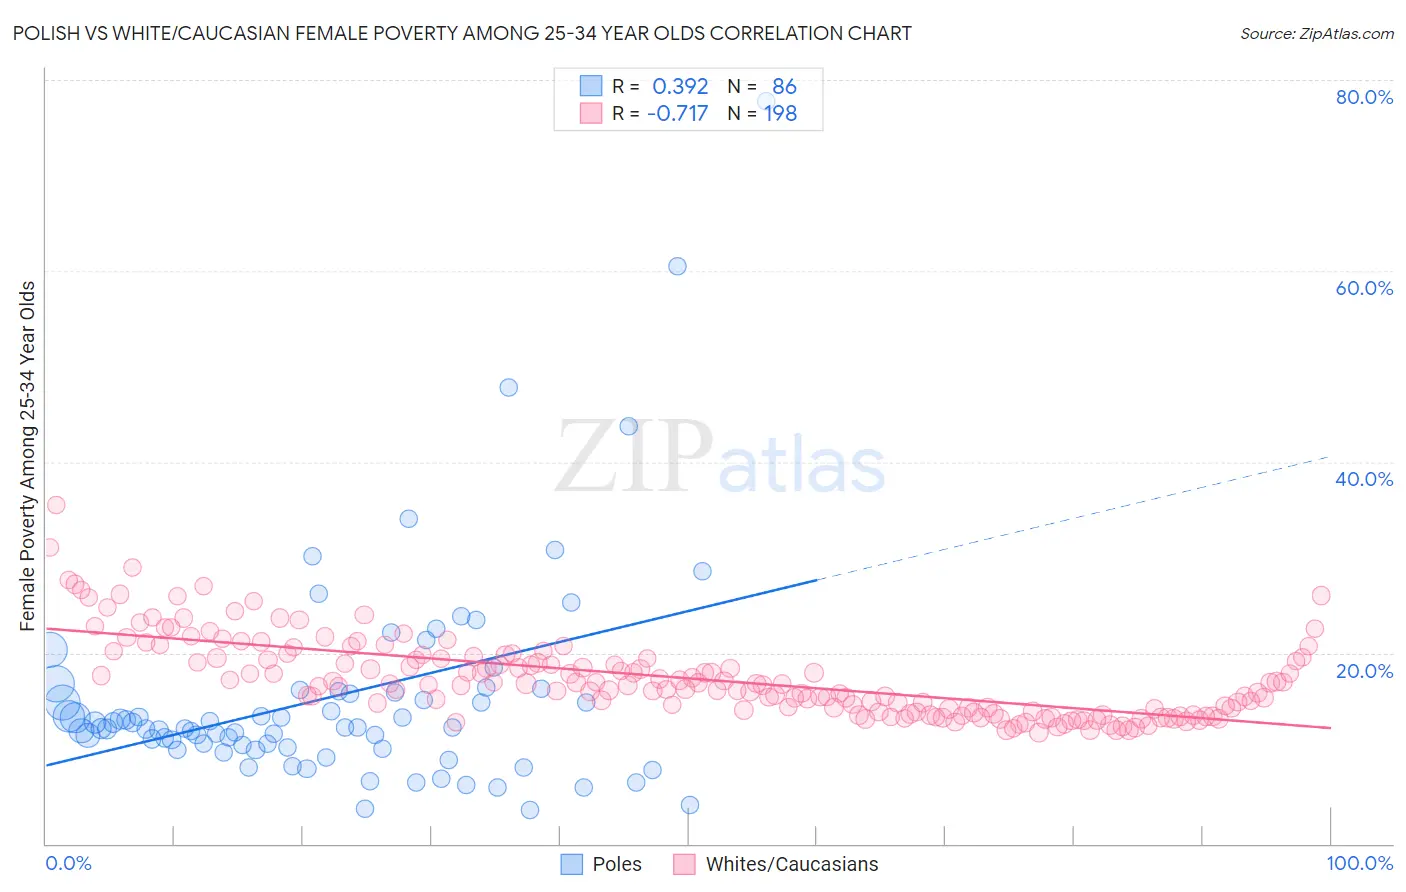 Polish vs White/Caucasian Female Poverty Among 25-34 Year Olds